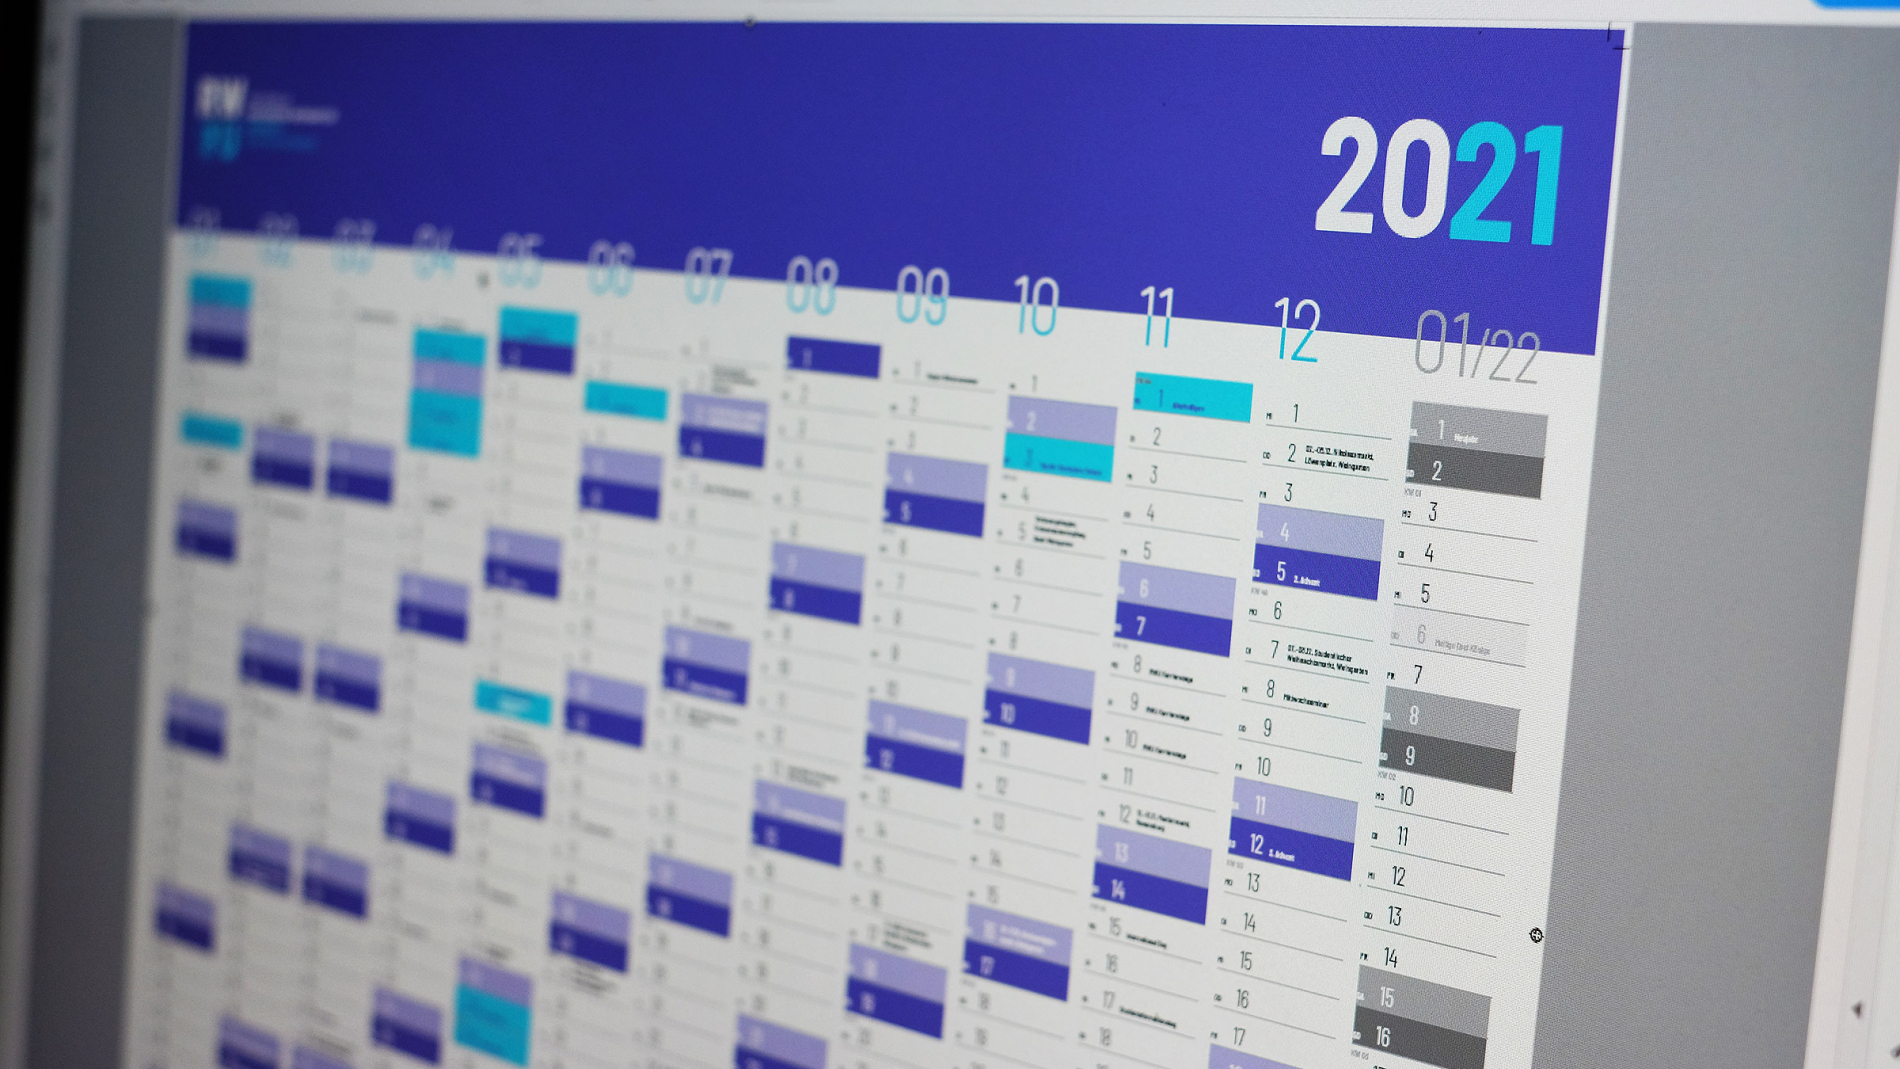 RWU Kalender 2021